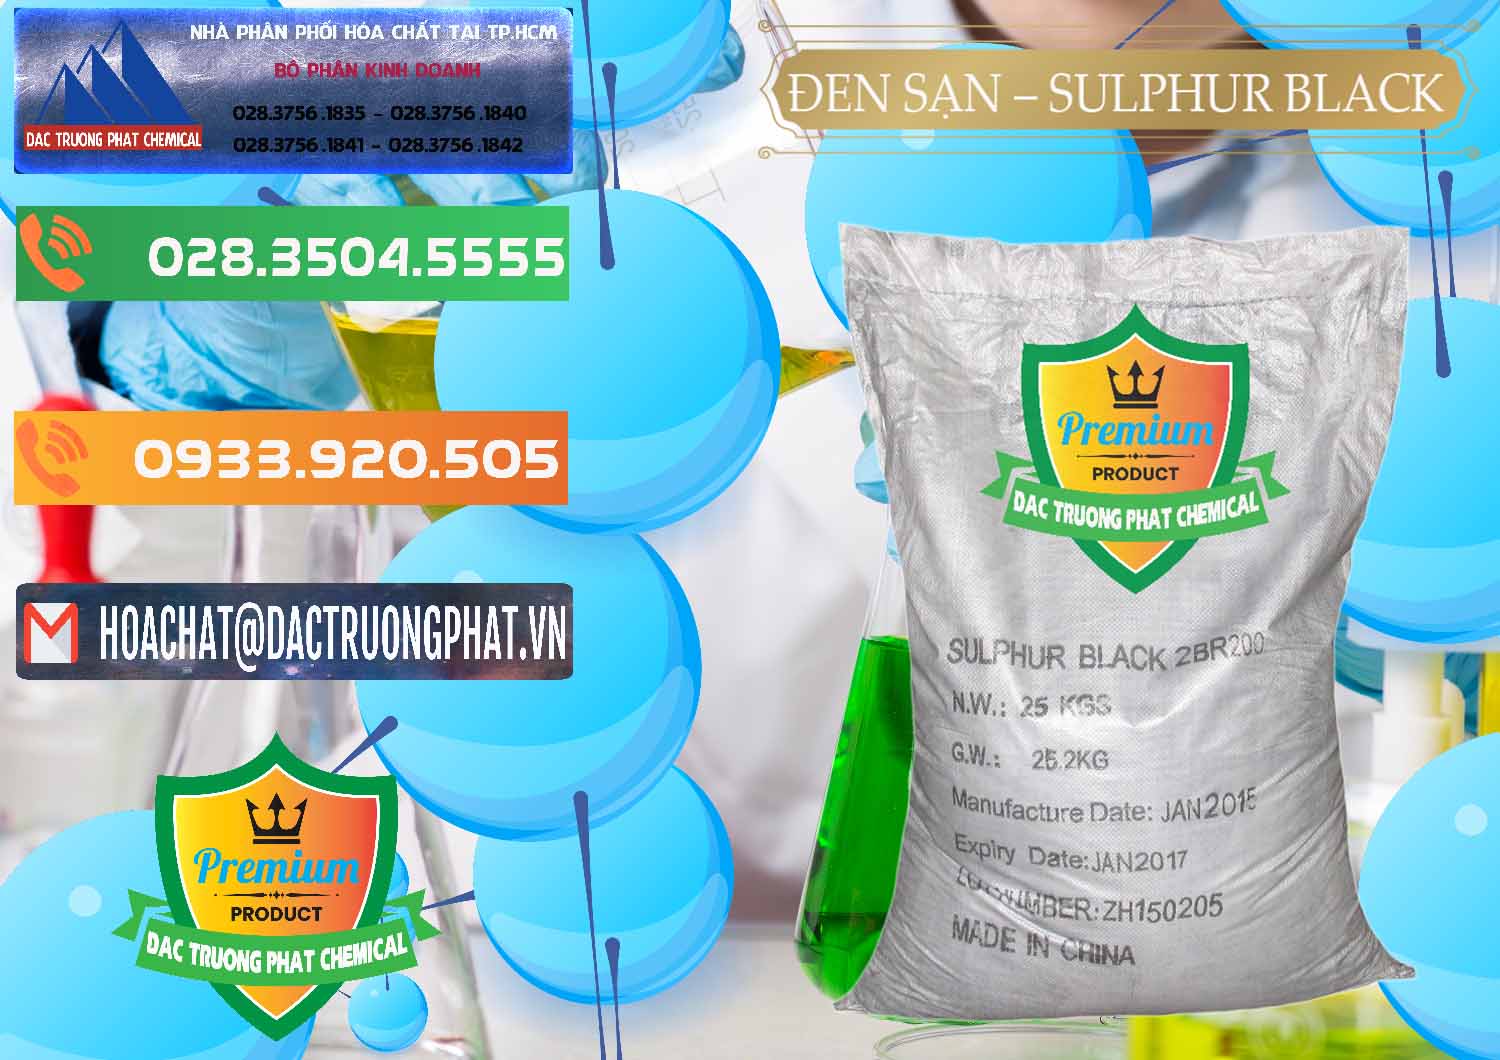 Bán & cung ứng Đen Sạn – Sulphur Black Trung Quốc China - 0062 - Chuyên bán và phân phối hóa chất tại TP.HCM - hoachatxulynuoc.com.vn